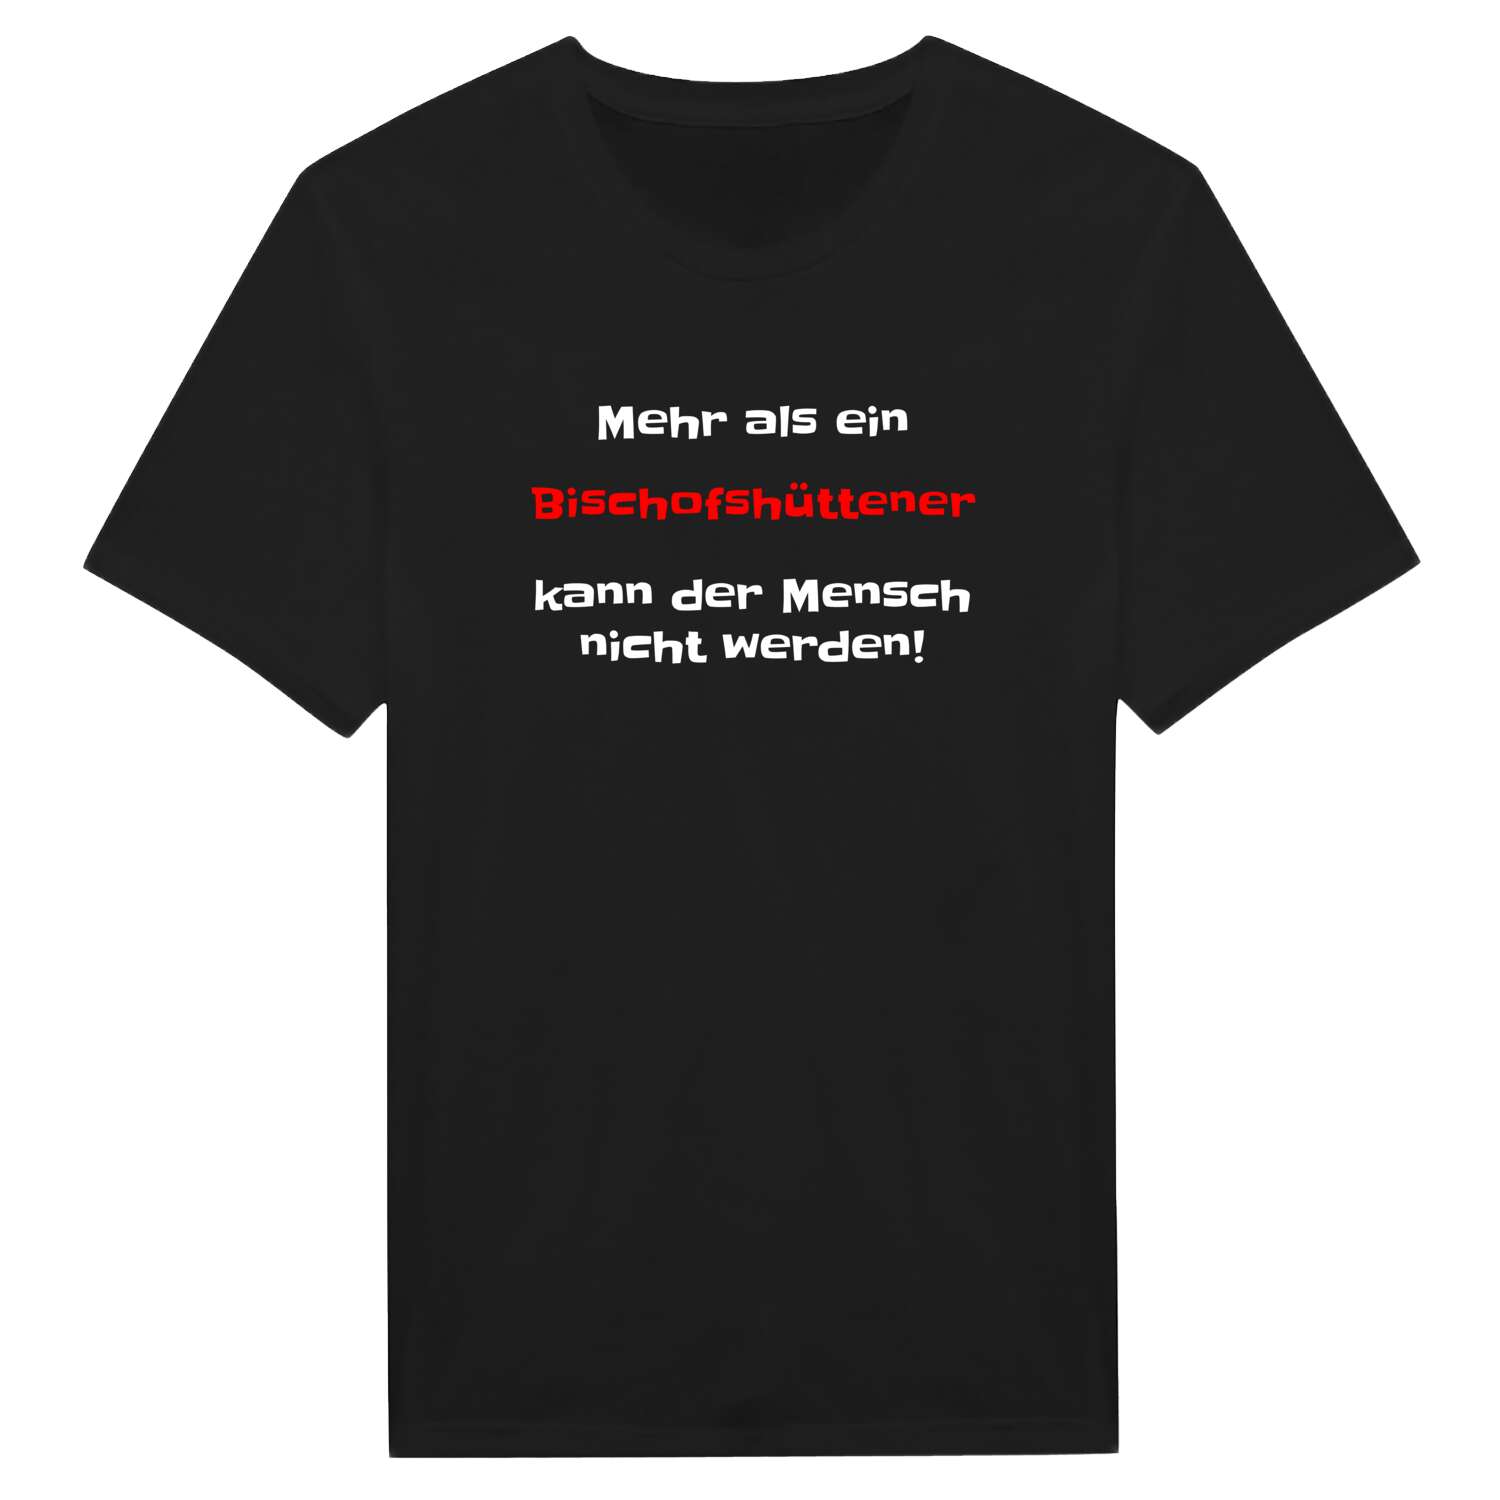 Bischofshütte T-Shirt »Mehr als ein«